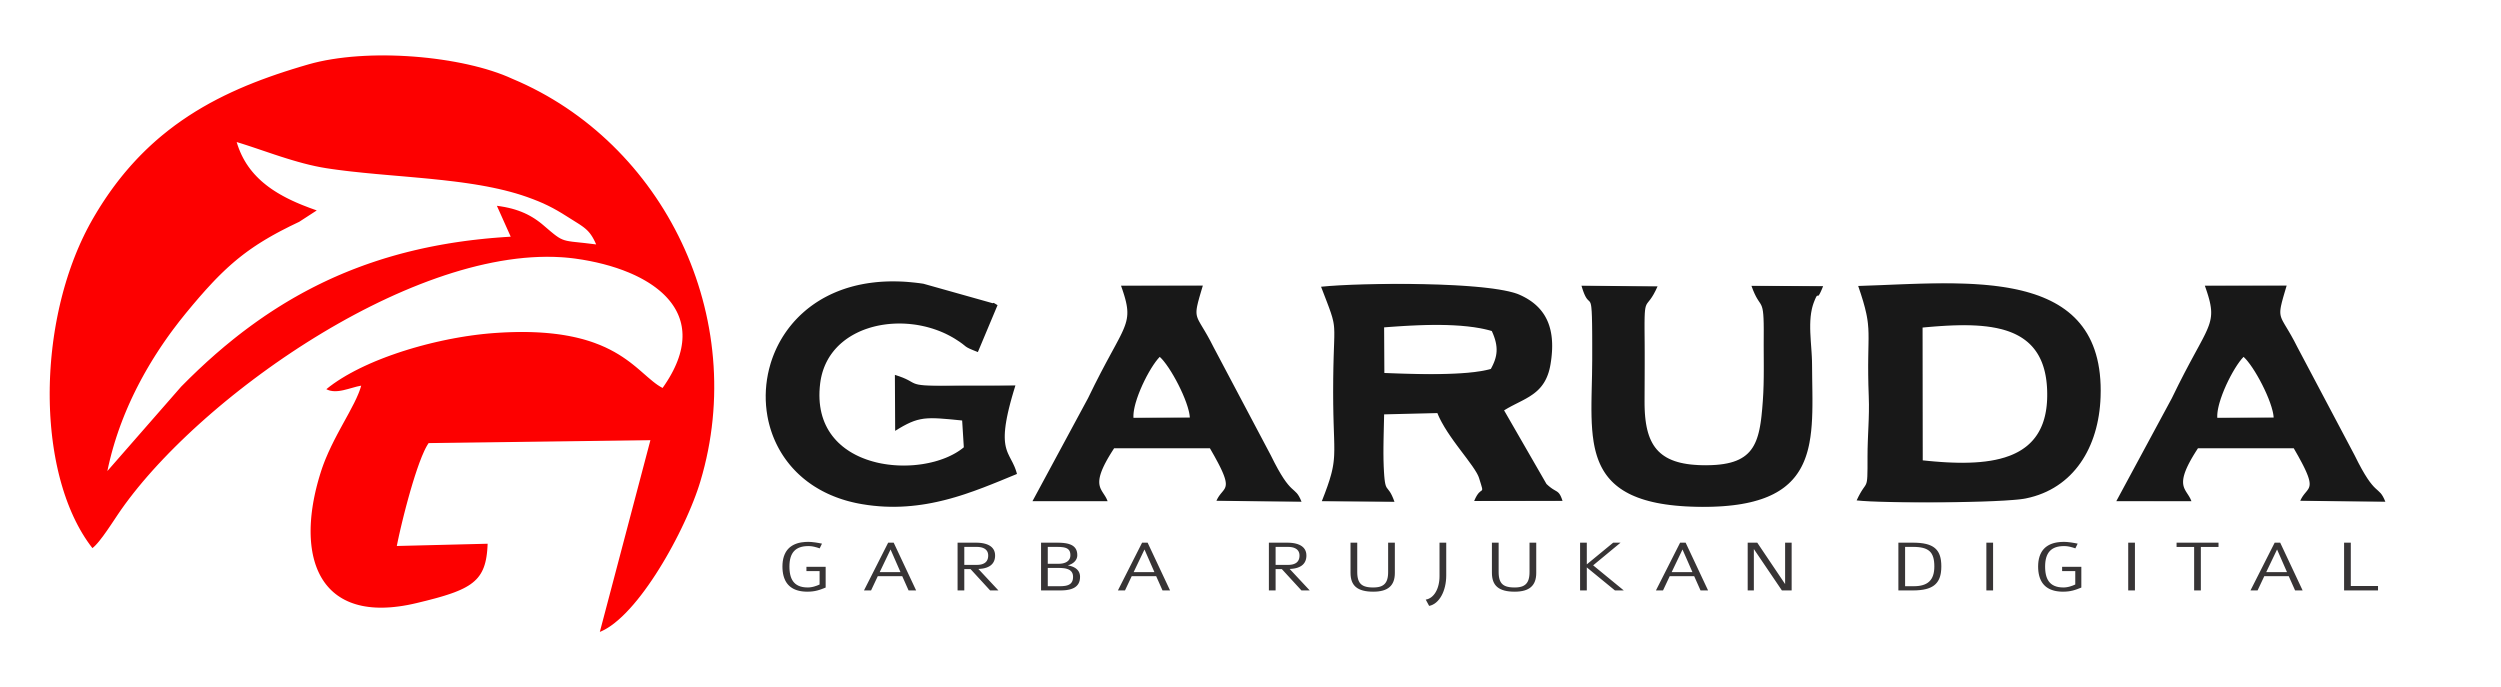 Image result for logo garba rujukan digital png